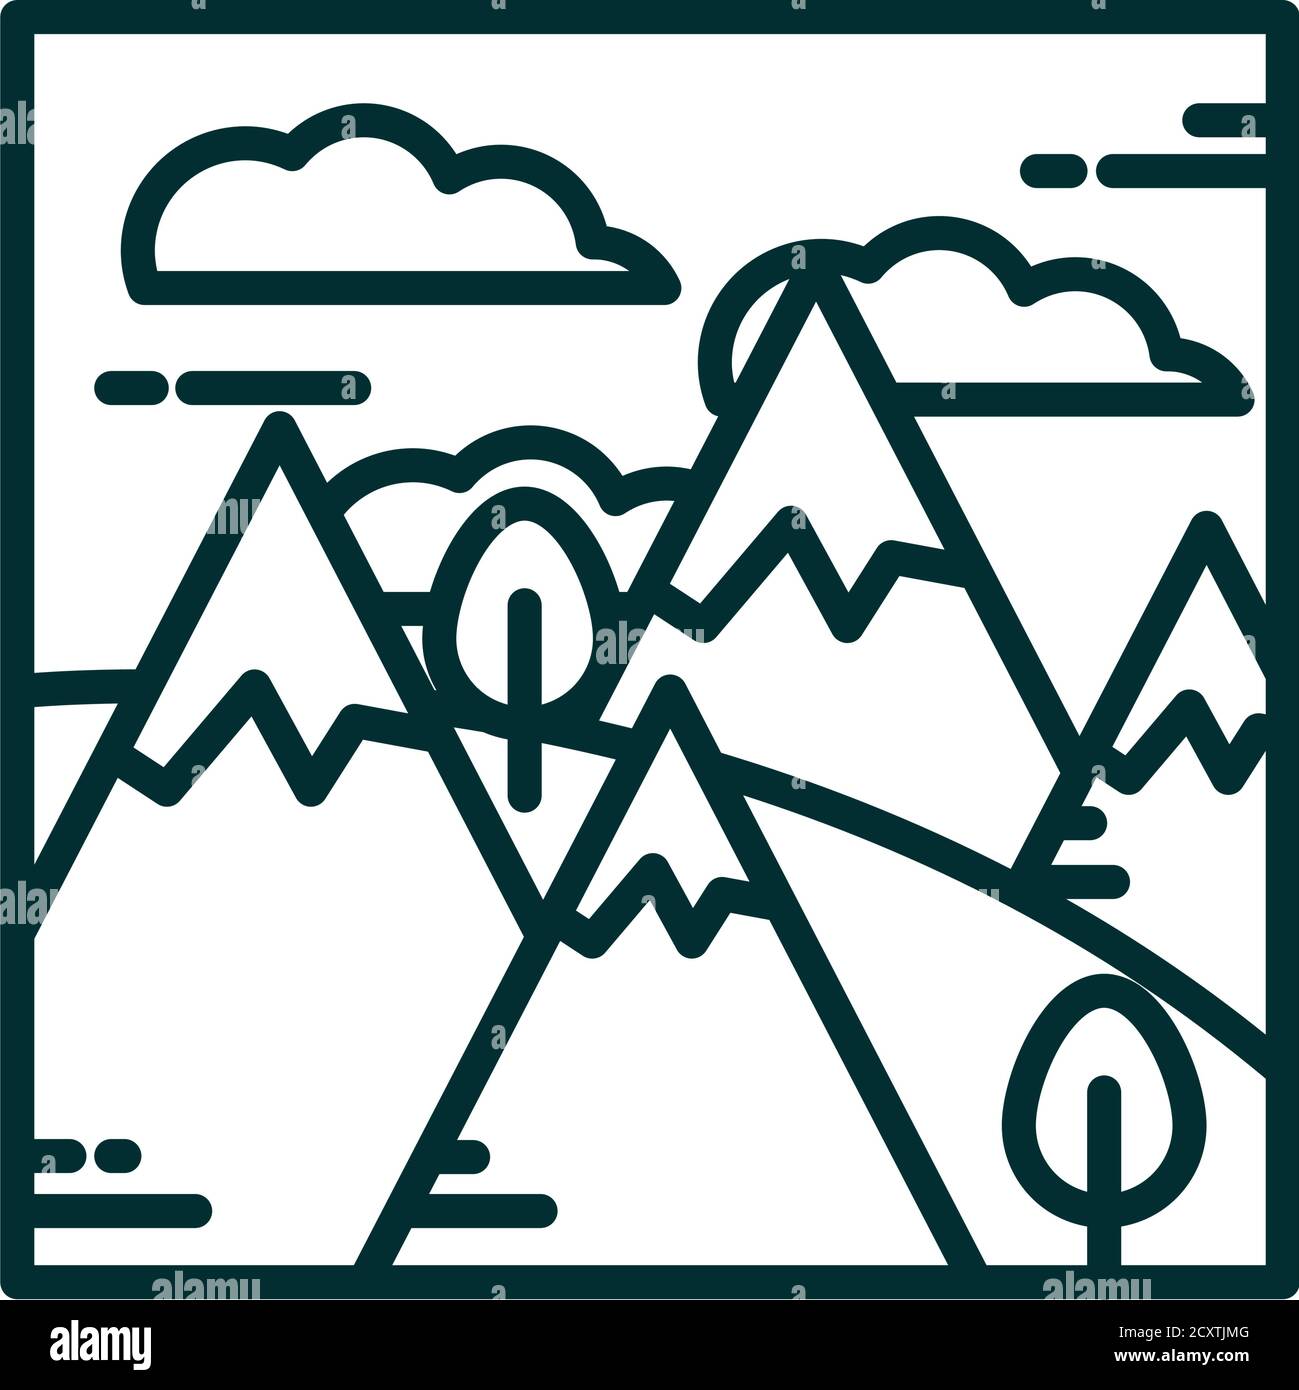 Landschaft Berge alpen Schnee Bäume Gras Wolken Himmel Cartoon Linie Vektordarstellung im Symbolstil Stock Vektor